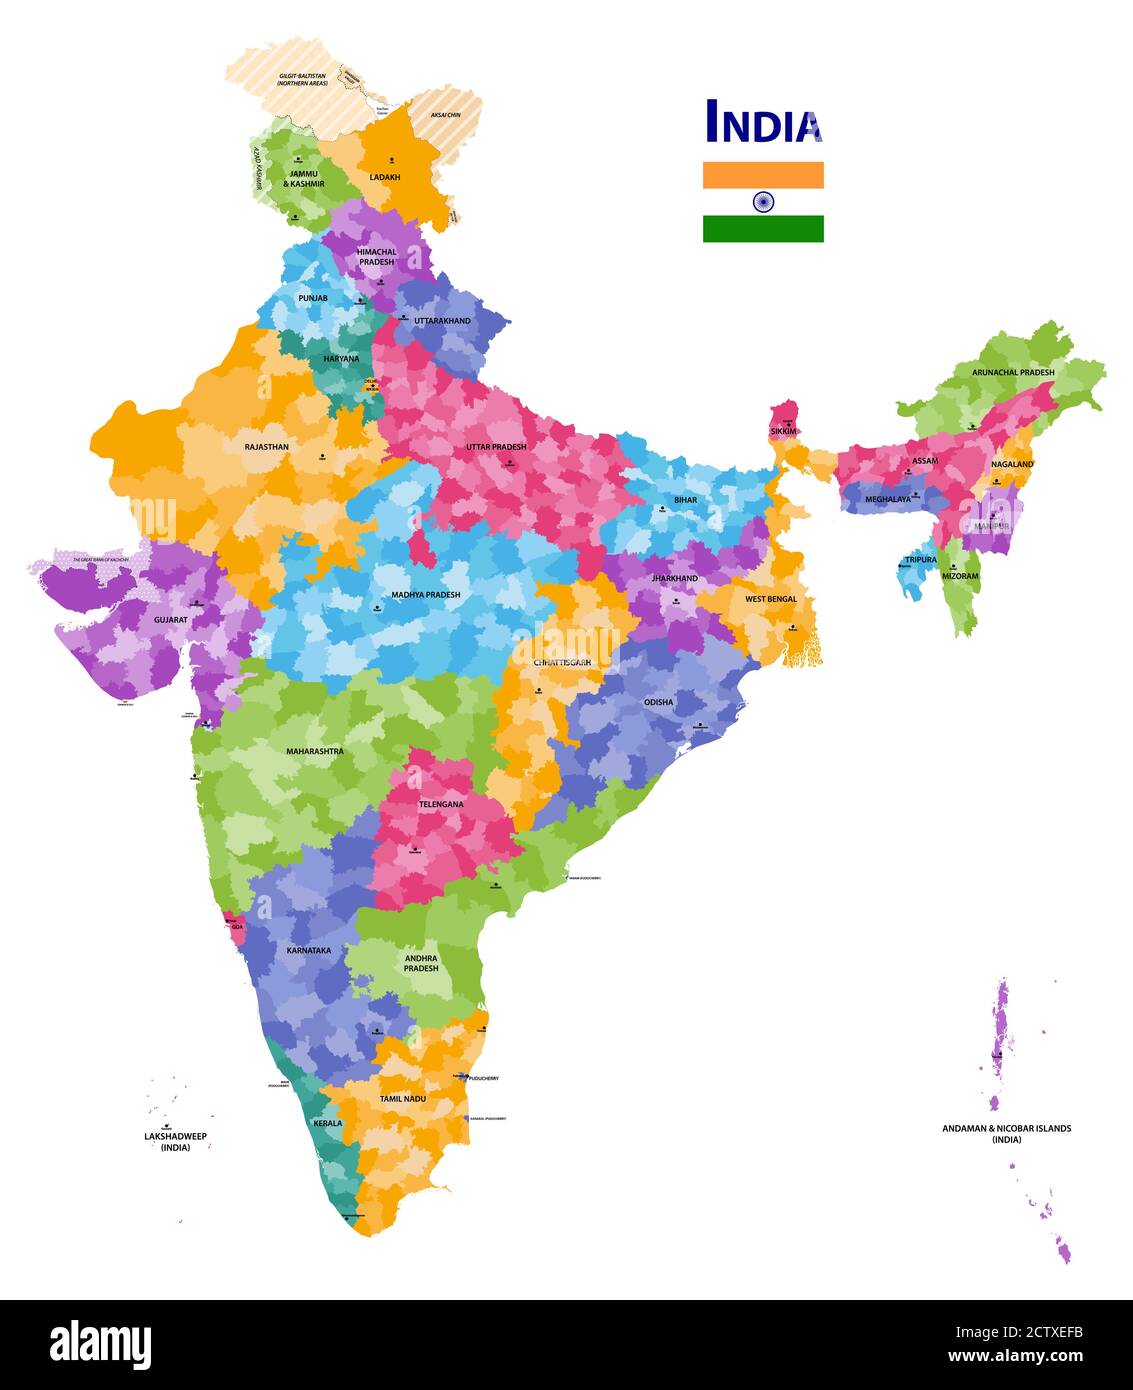 India mappa vettoriale dettagliata che mostra i confini degli stati e dei distretti con i nomi e le capitali degli stati. Bandiera dell'India Illustrazione Vettoriale